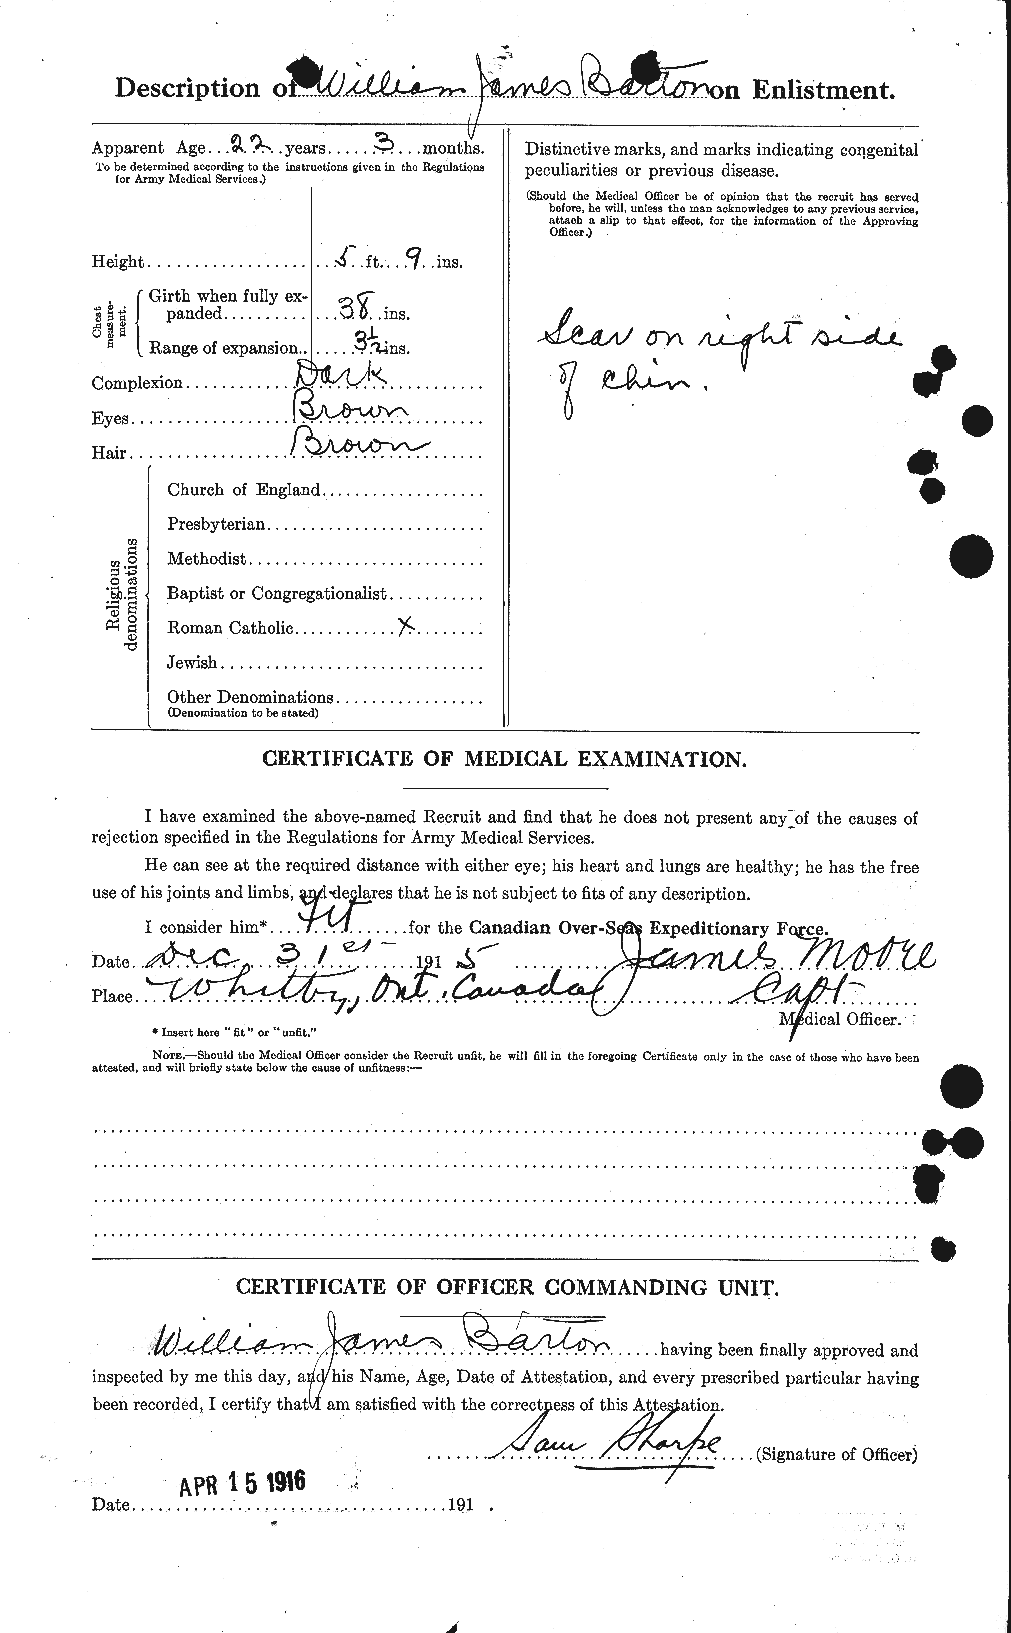 Dossiers du Personnel de la Première Guerre mondiale - CEC 221301b